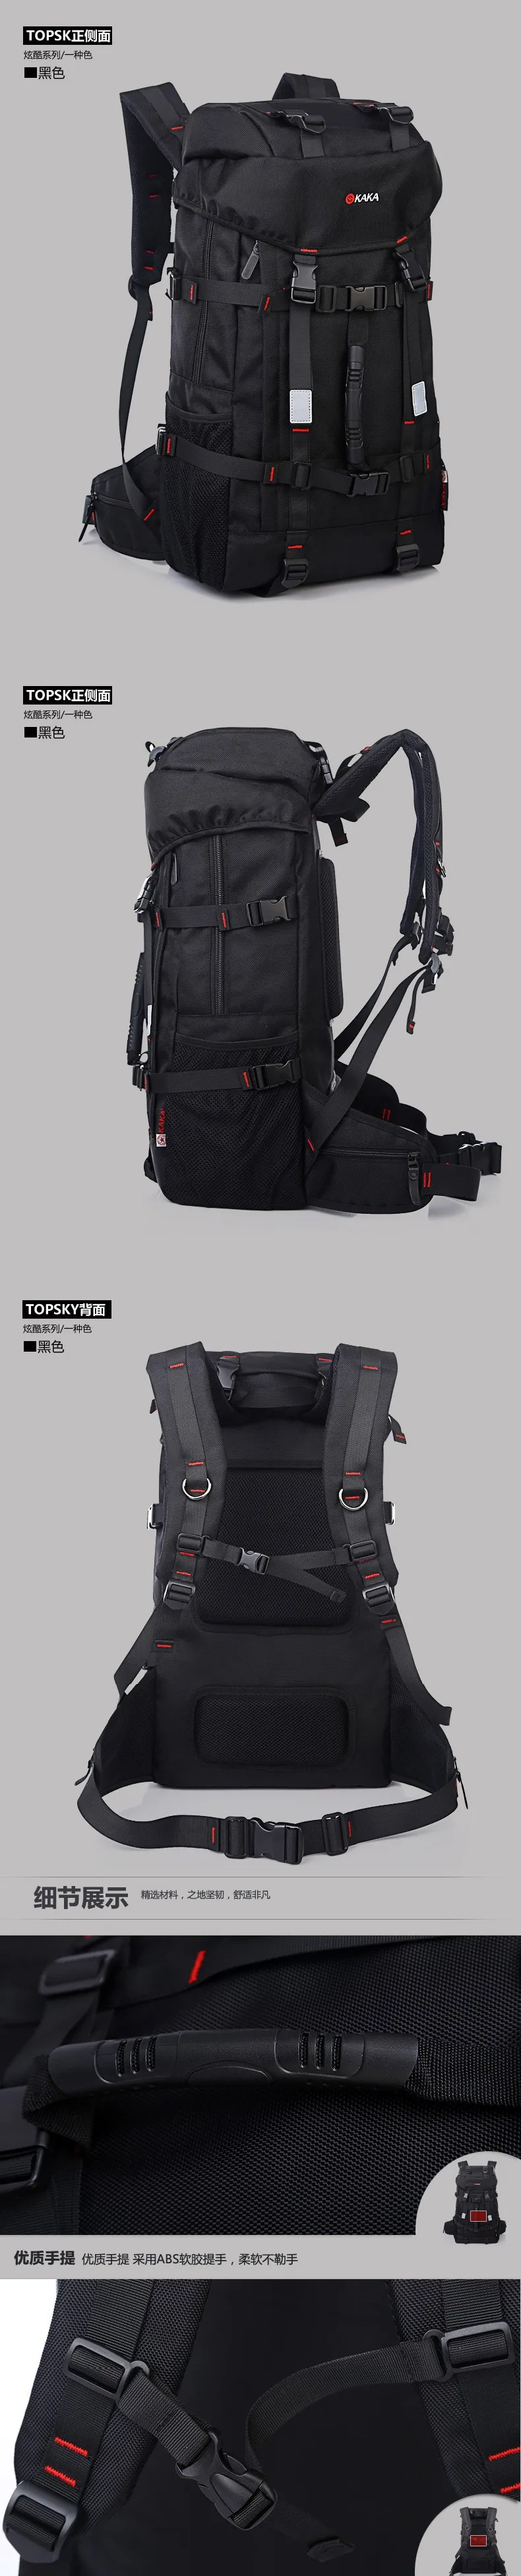 X-Online горячий Хорошее качество мужской большой туристический рюкзак большой емкости Рюкзаки